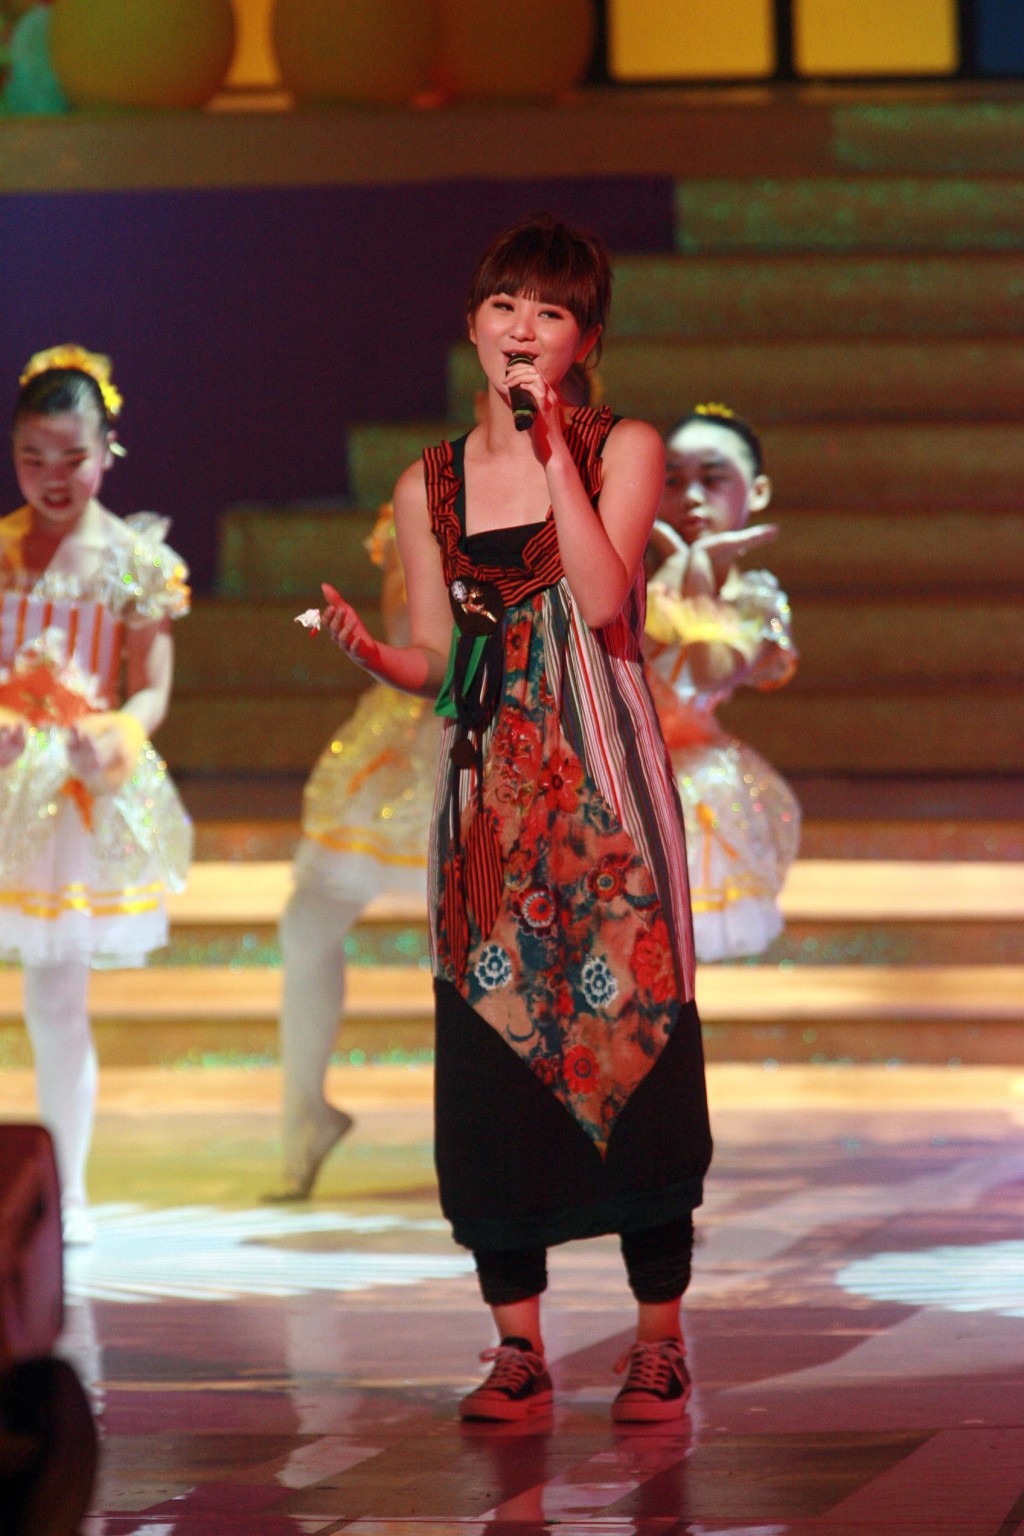 2007年裕美曾夺无綫《儿歌金曲》。